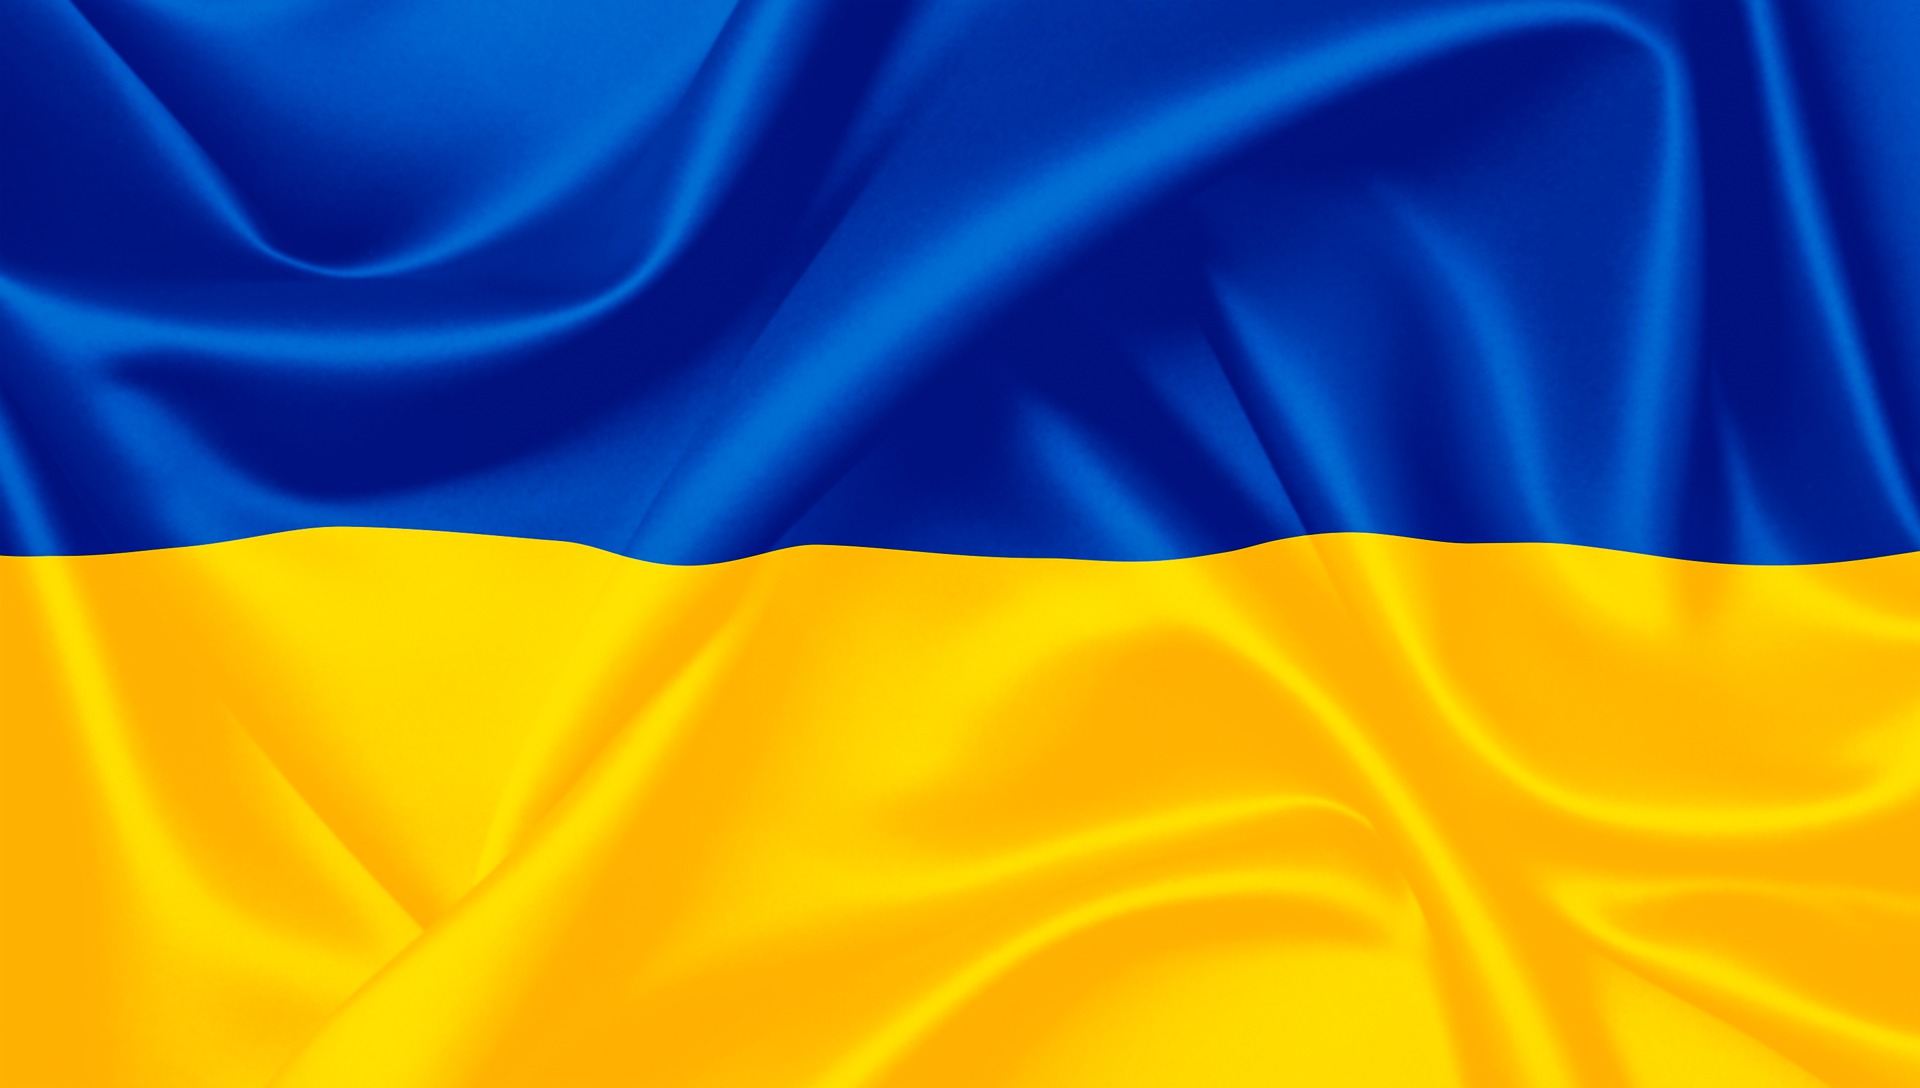 Econimic struggle changes EU stance on Ukraine 